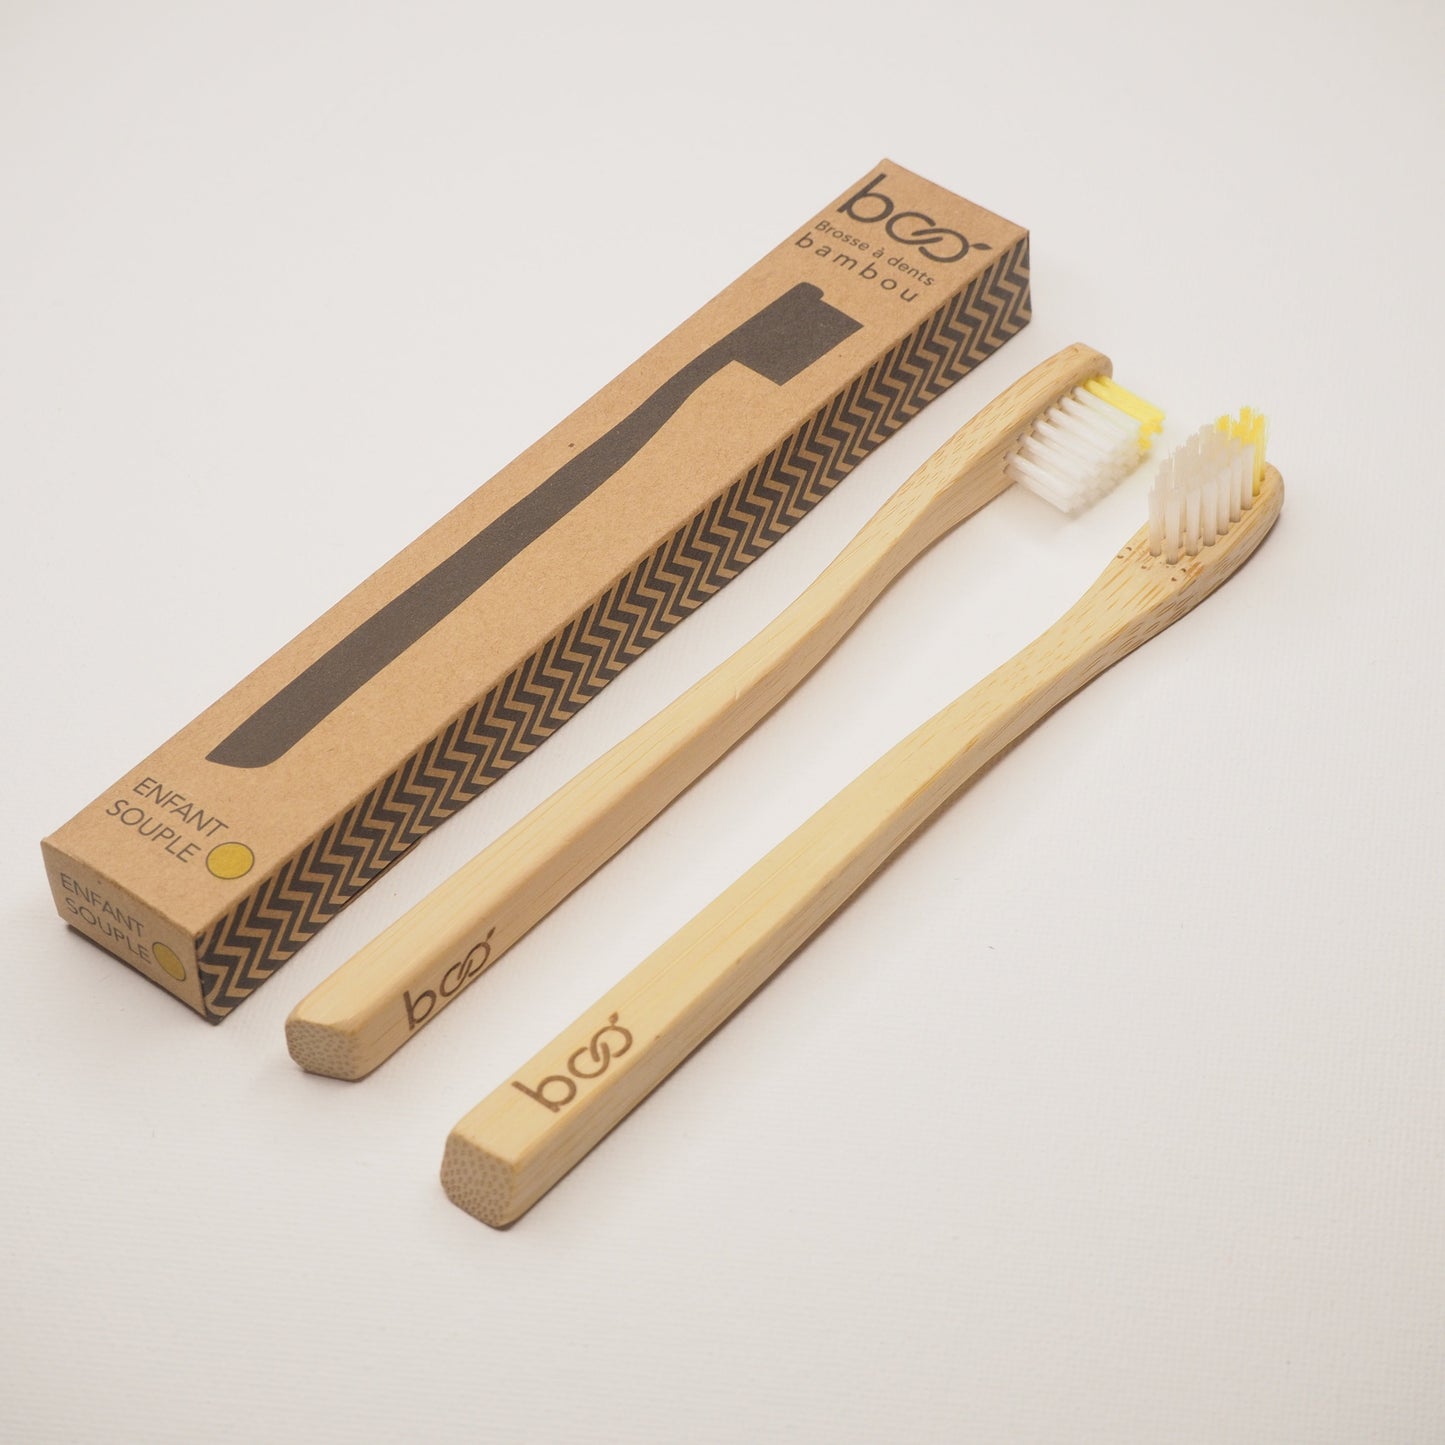 My Boo Company -- Brosse à dents enfant en bambou (souple jaune)